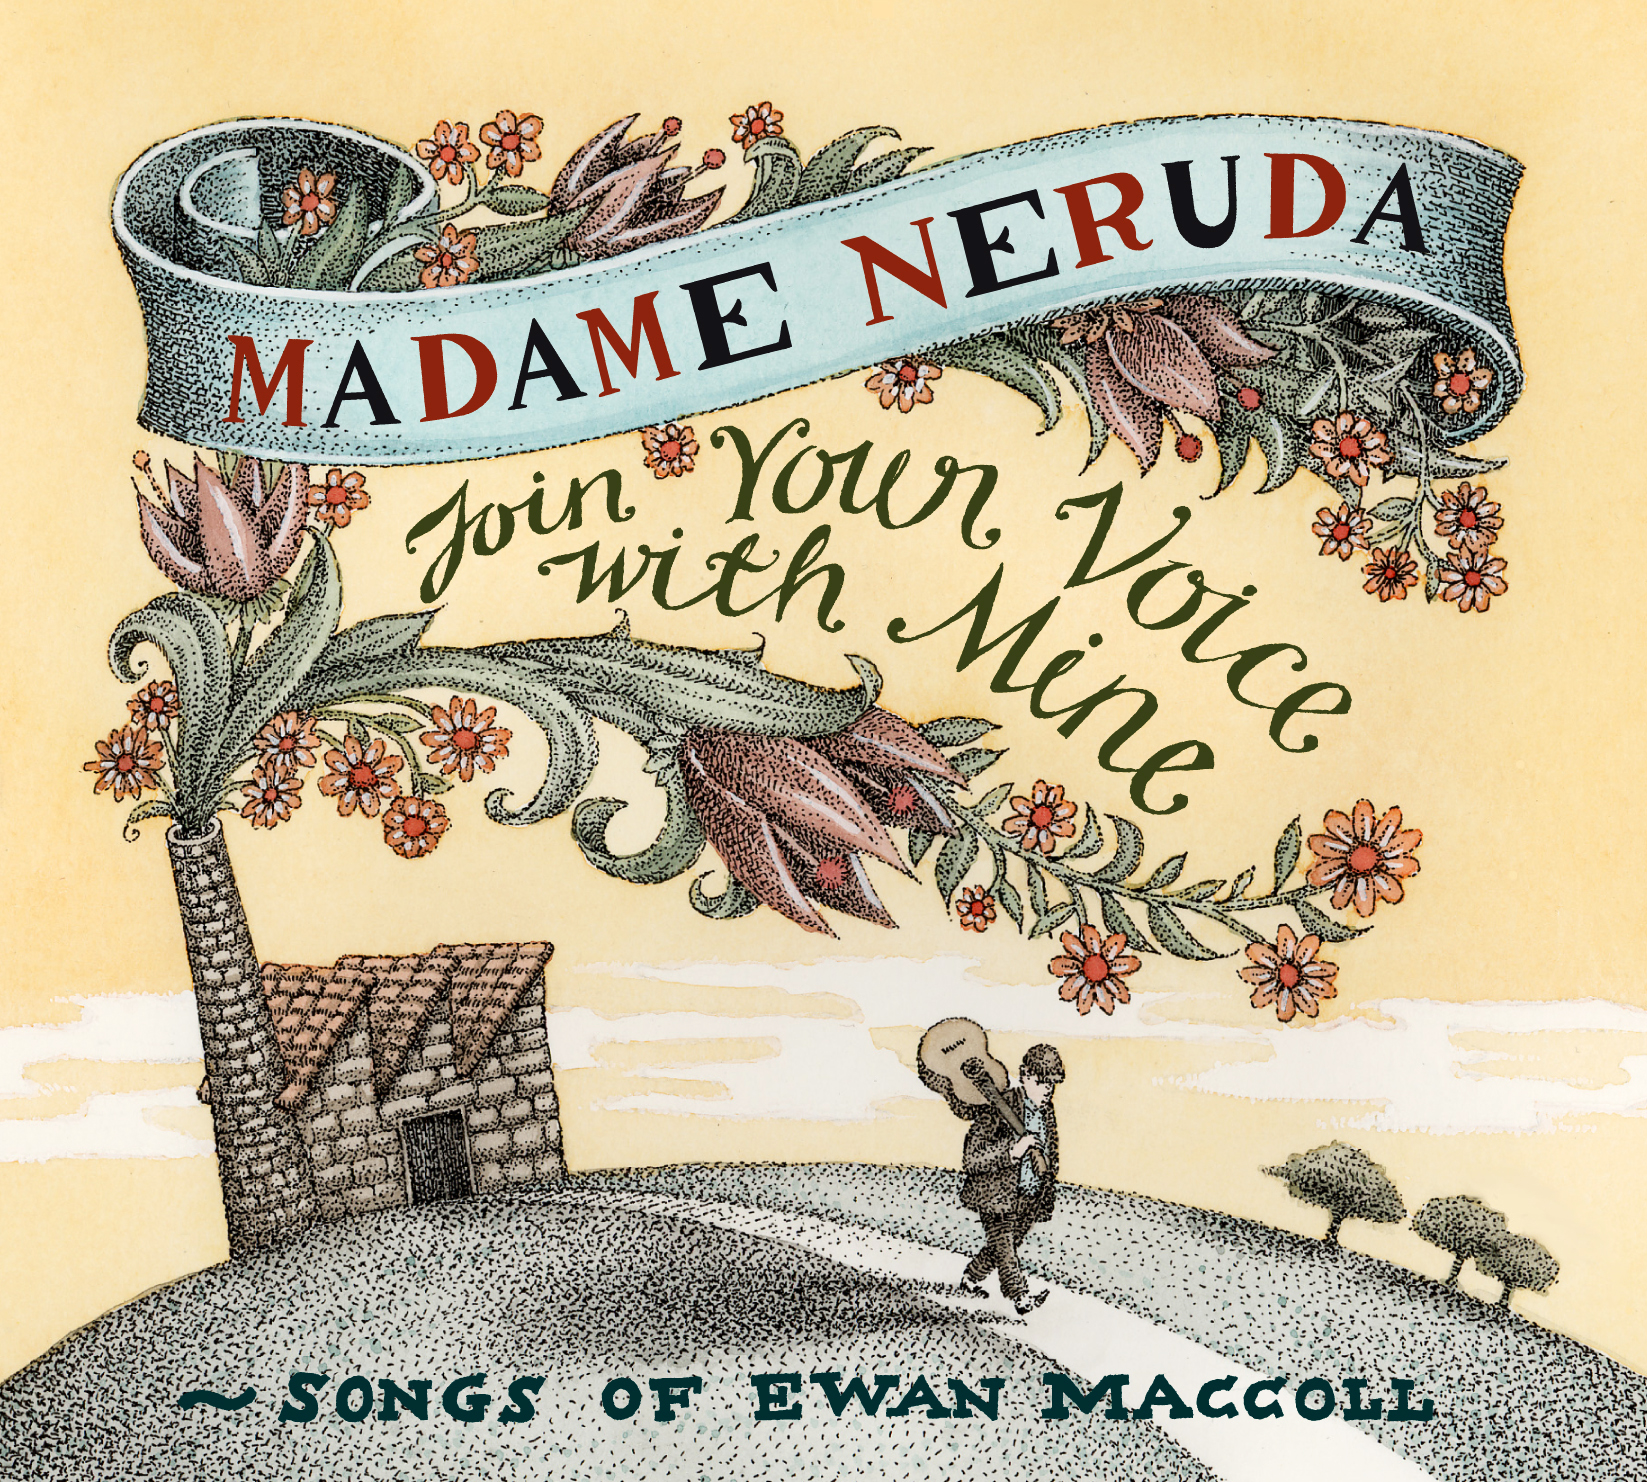 Madame Neruda, CD cover